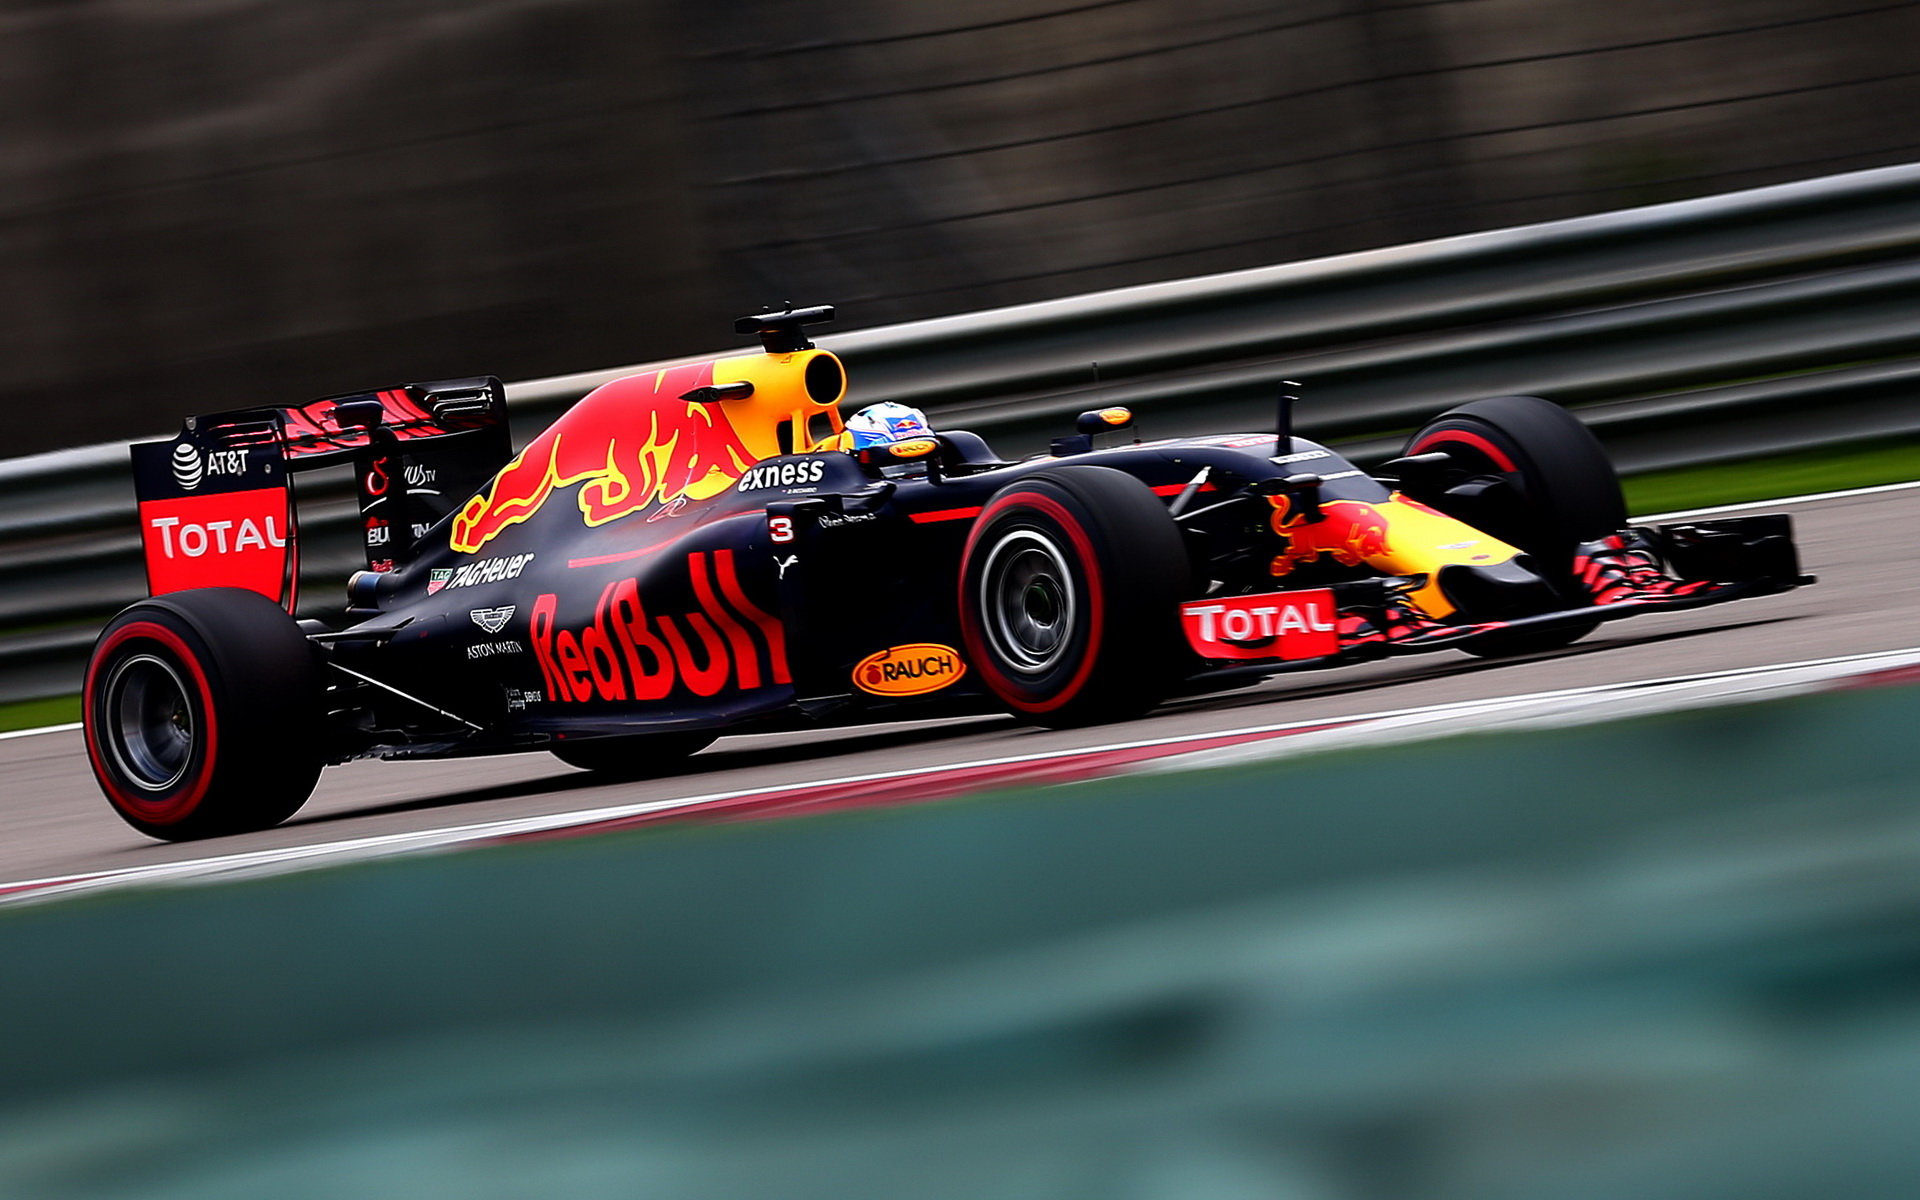 Daniel Ricciardo v kvalifikaci v Číně